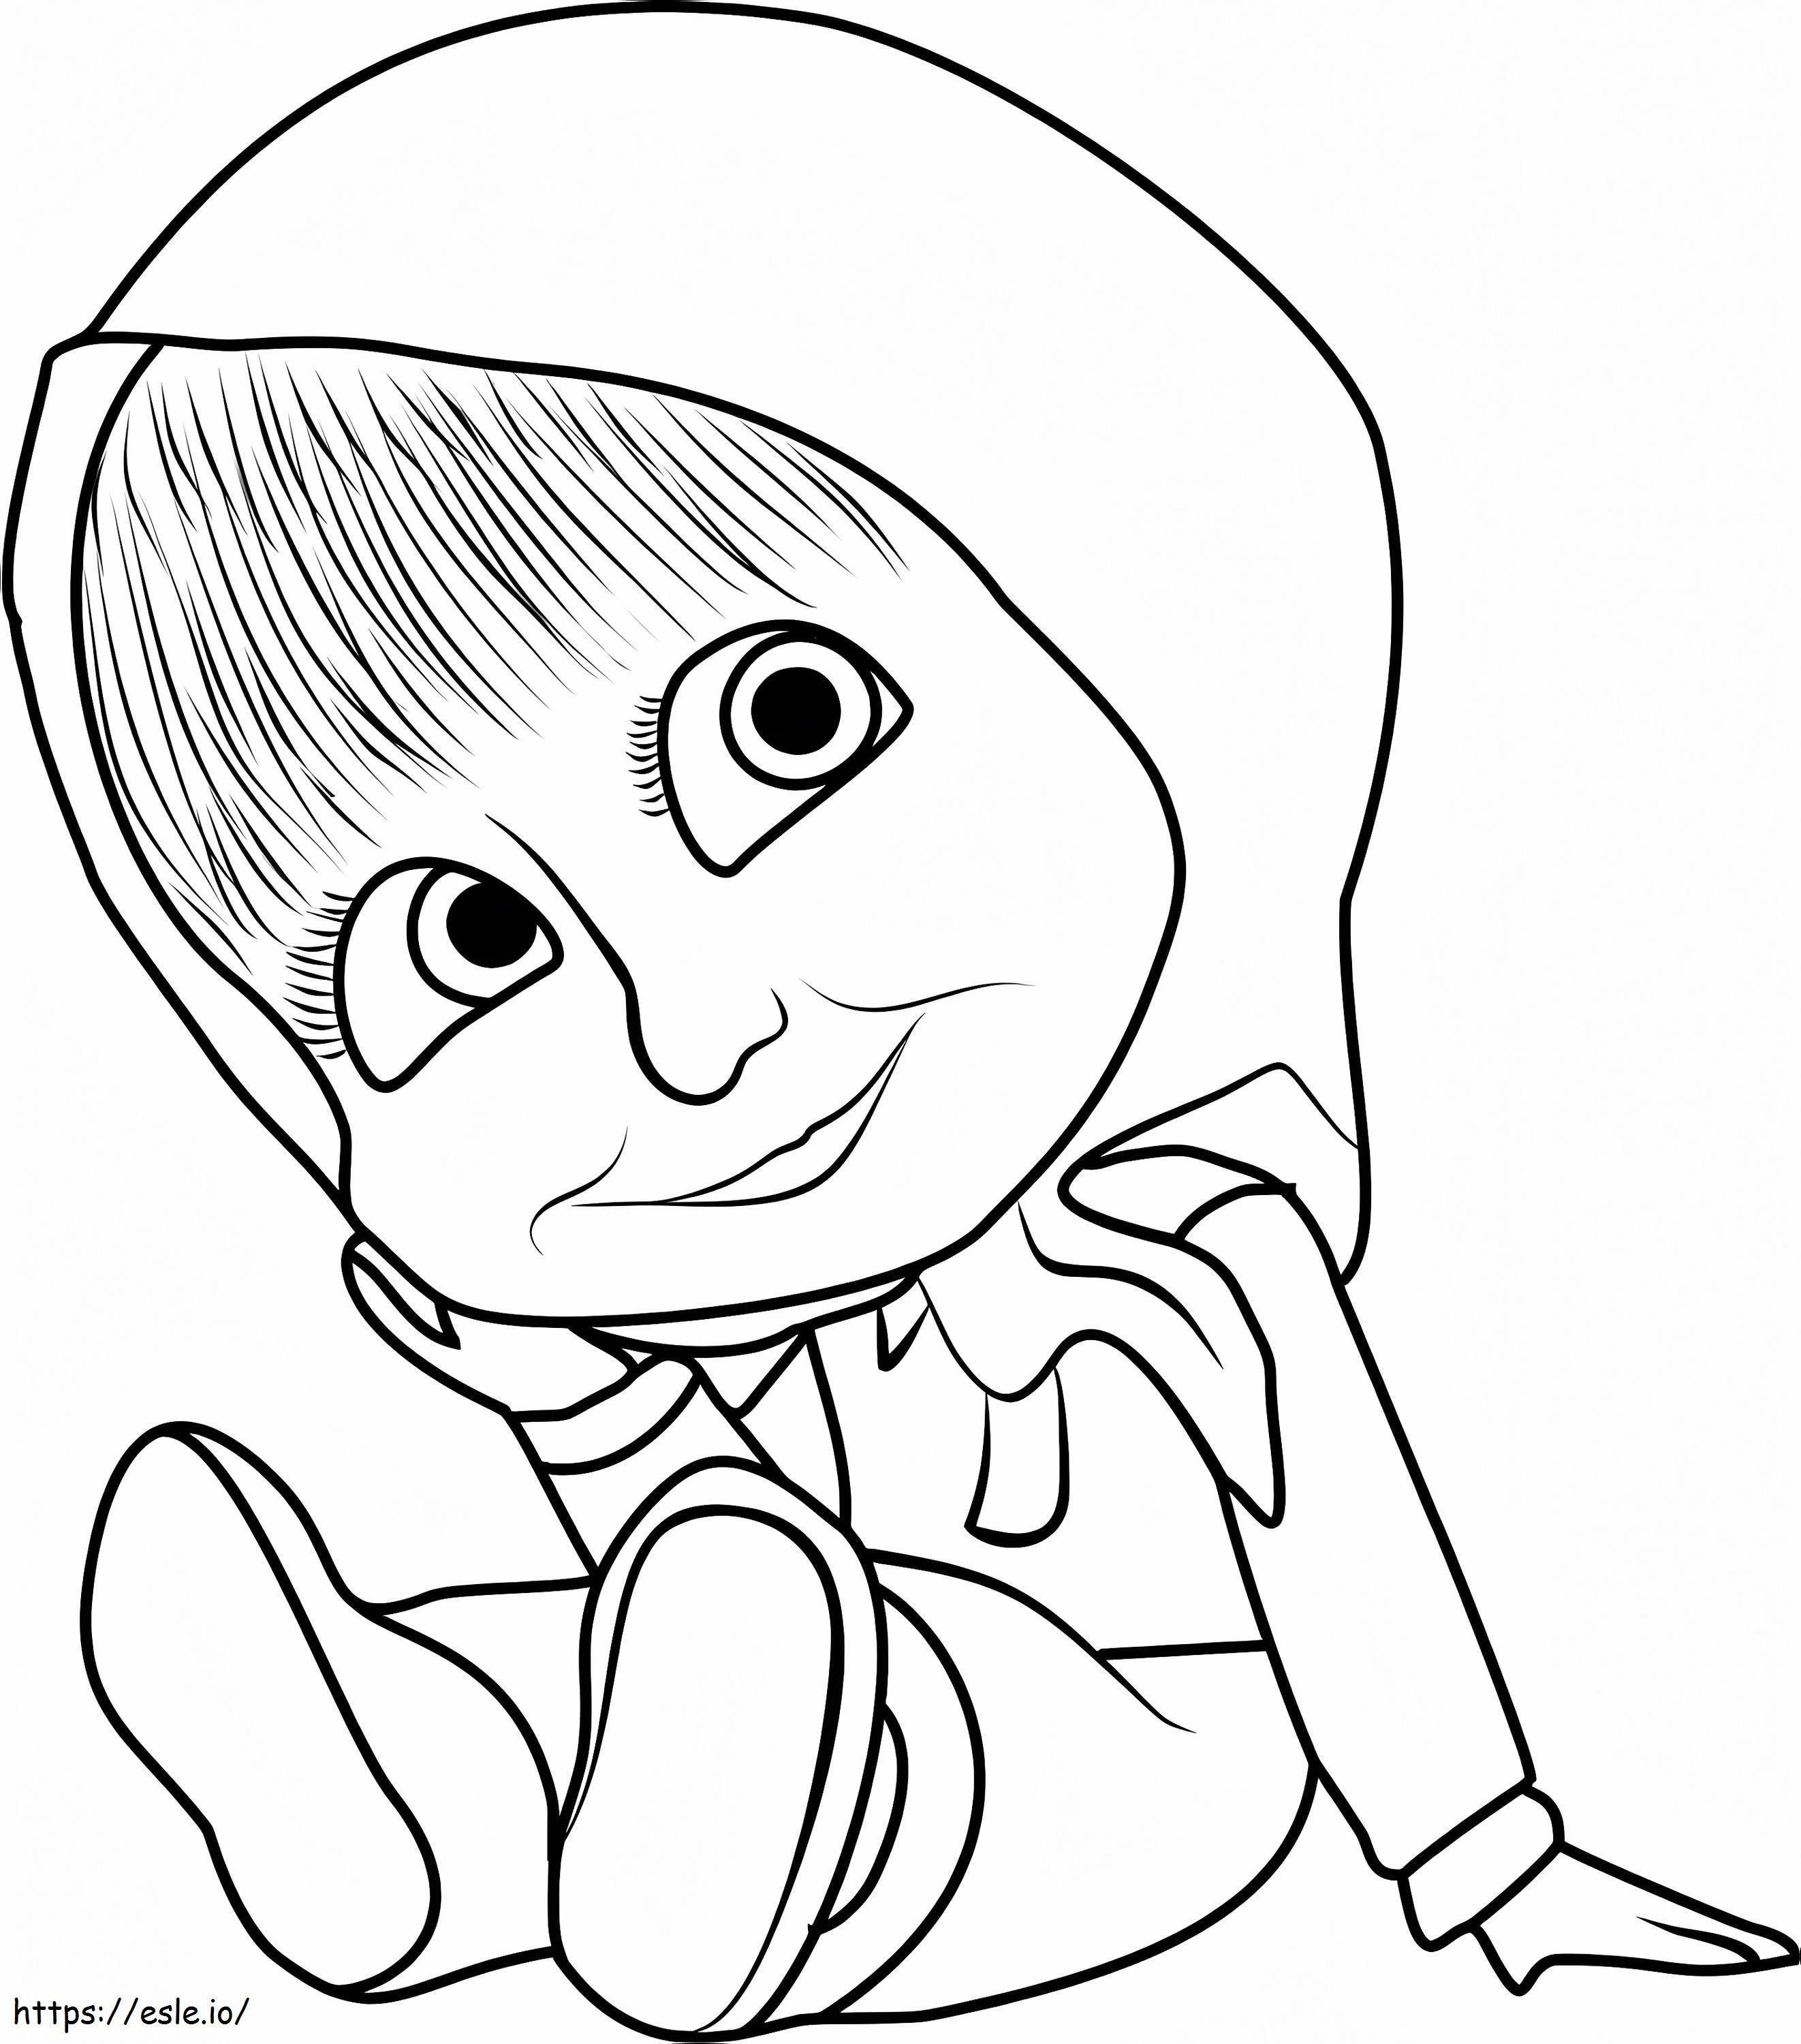 Coloriage Bébé Masha souriant à imprimer dessin